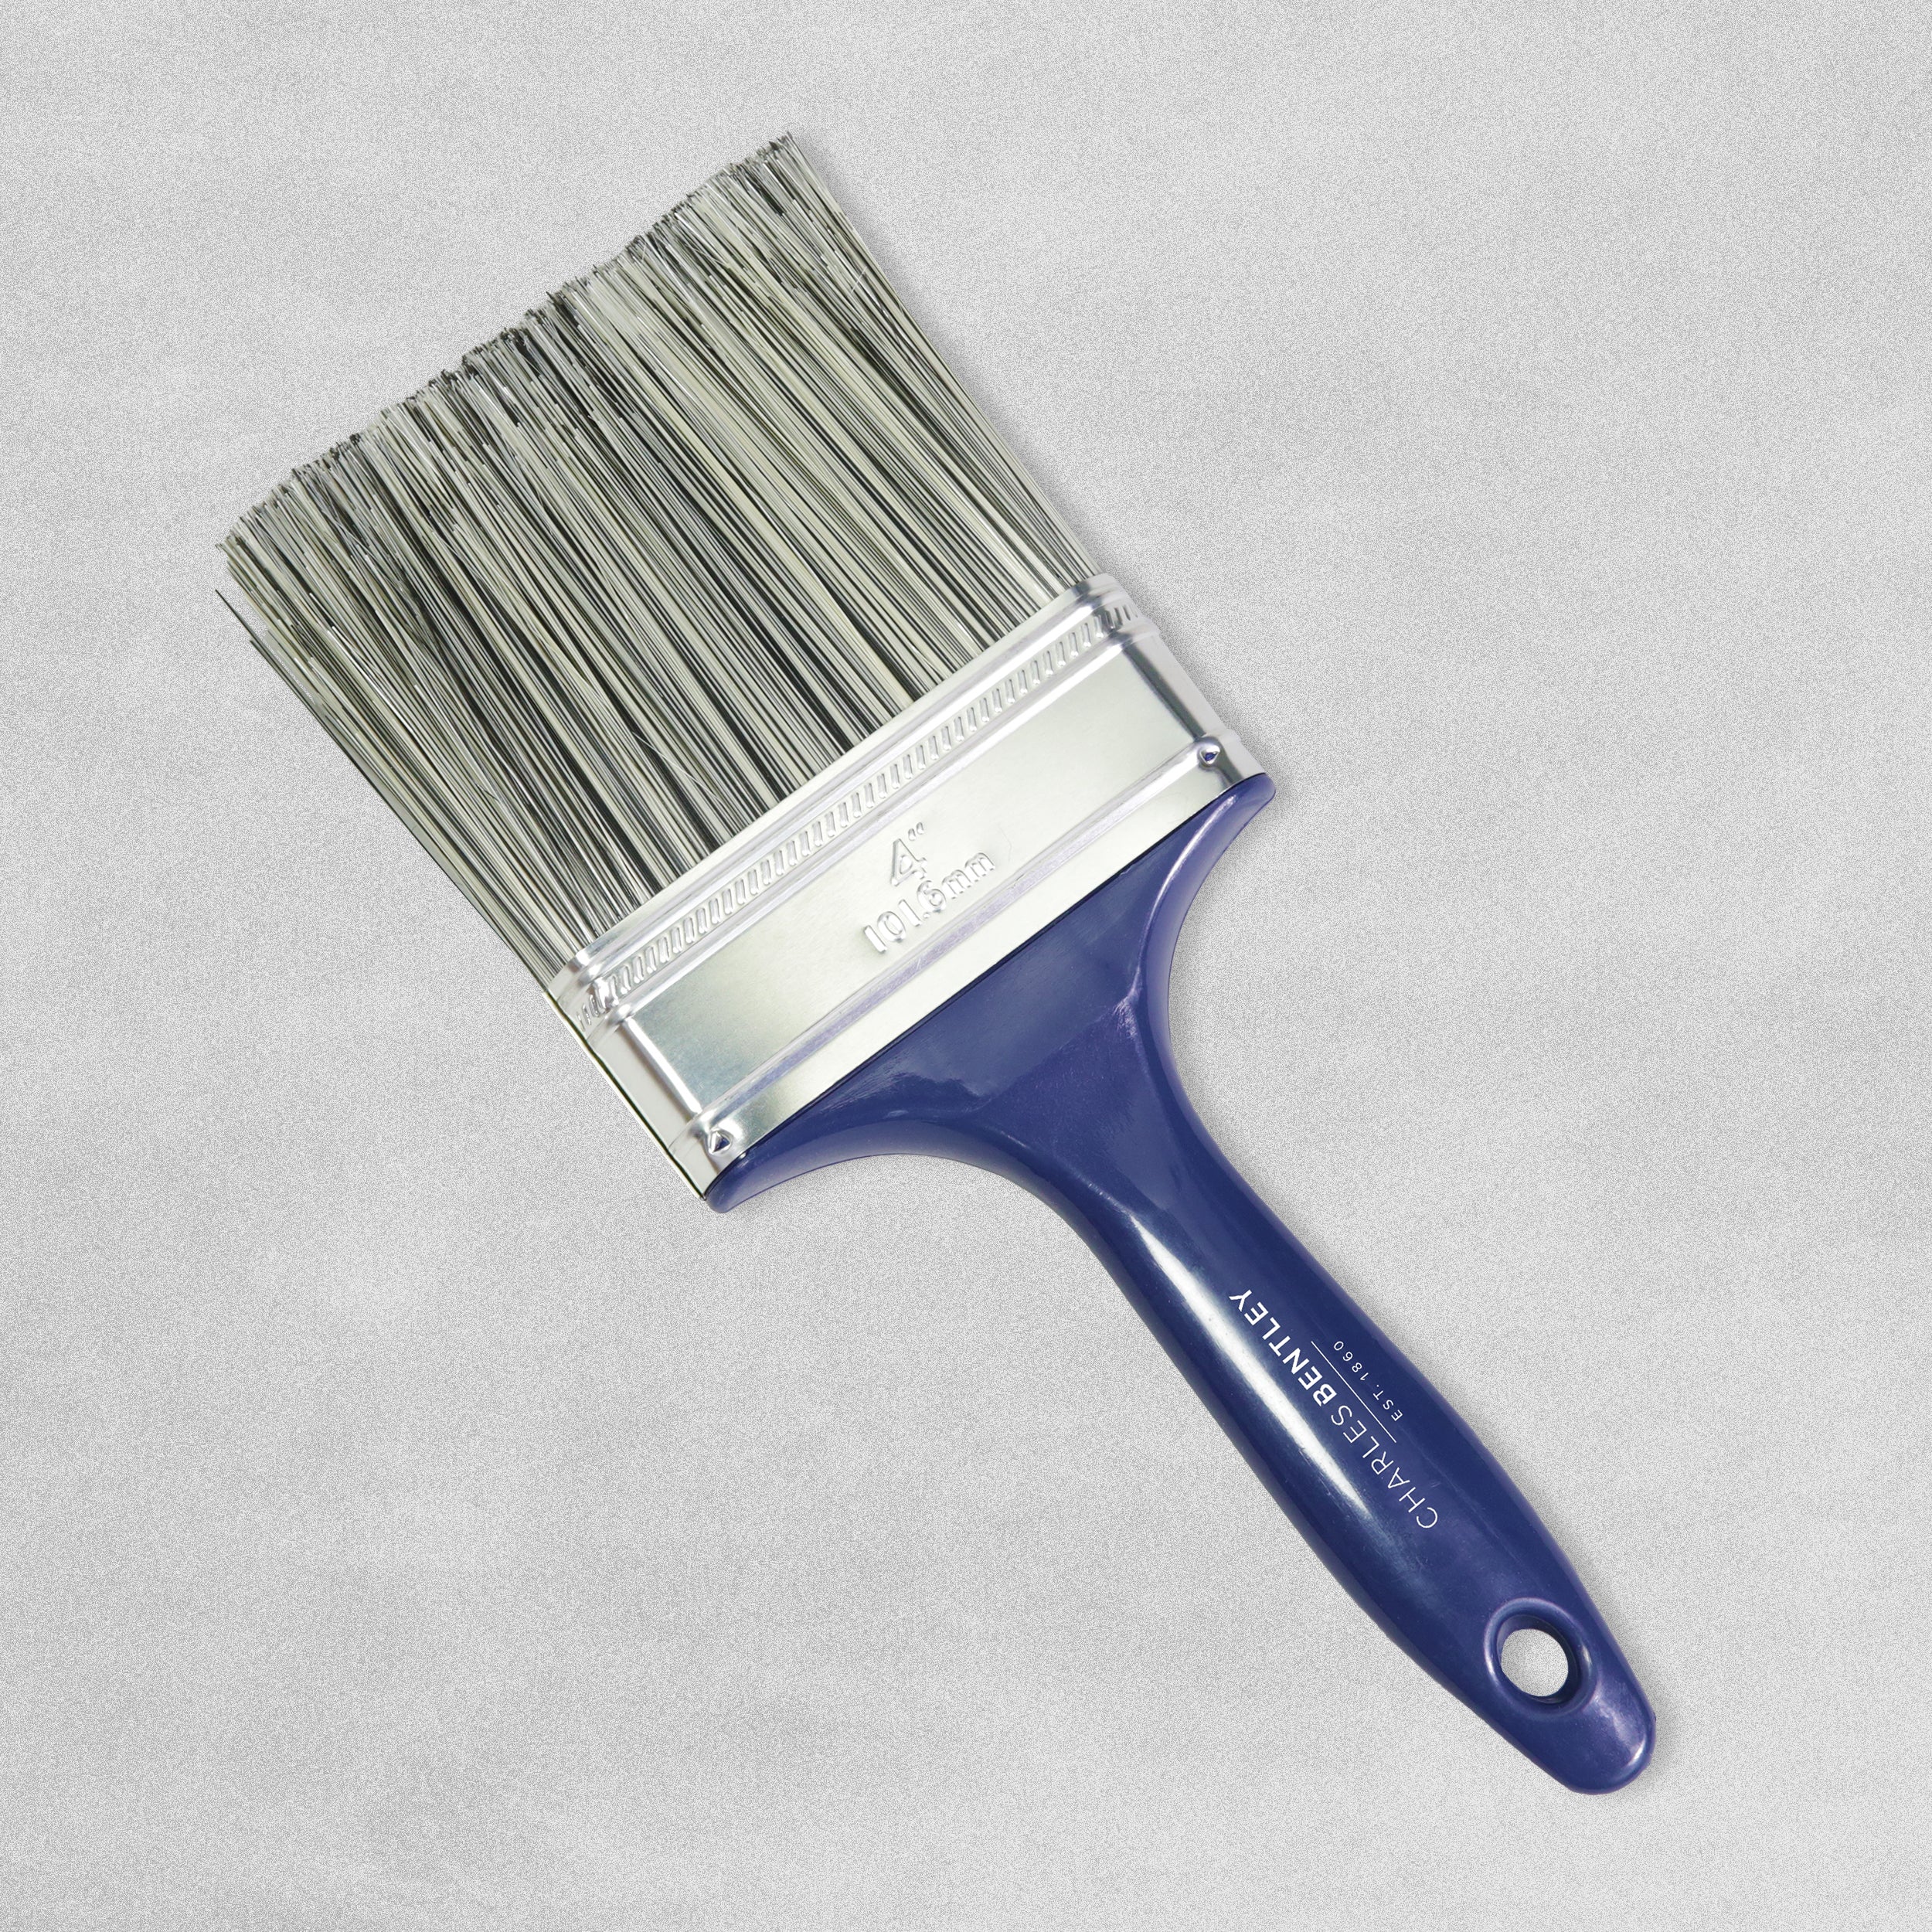 Charles Bentley All Purpose Paint Brush 4"